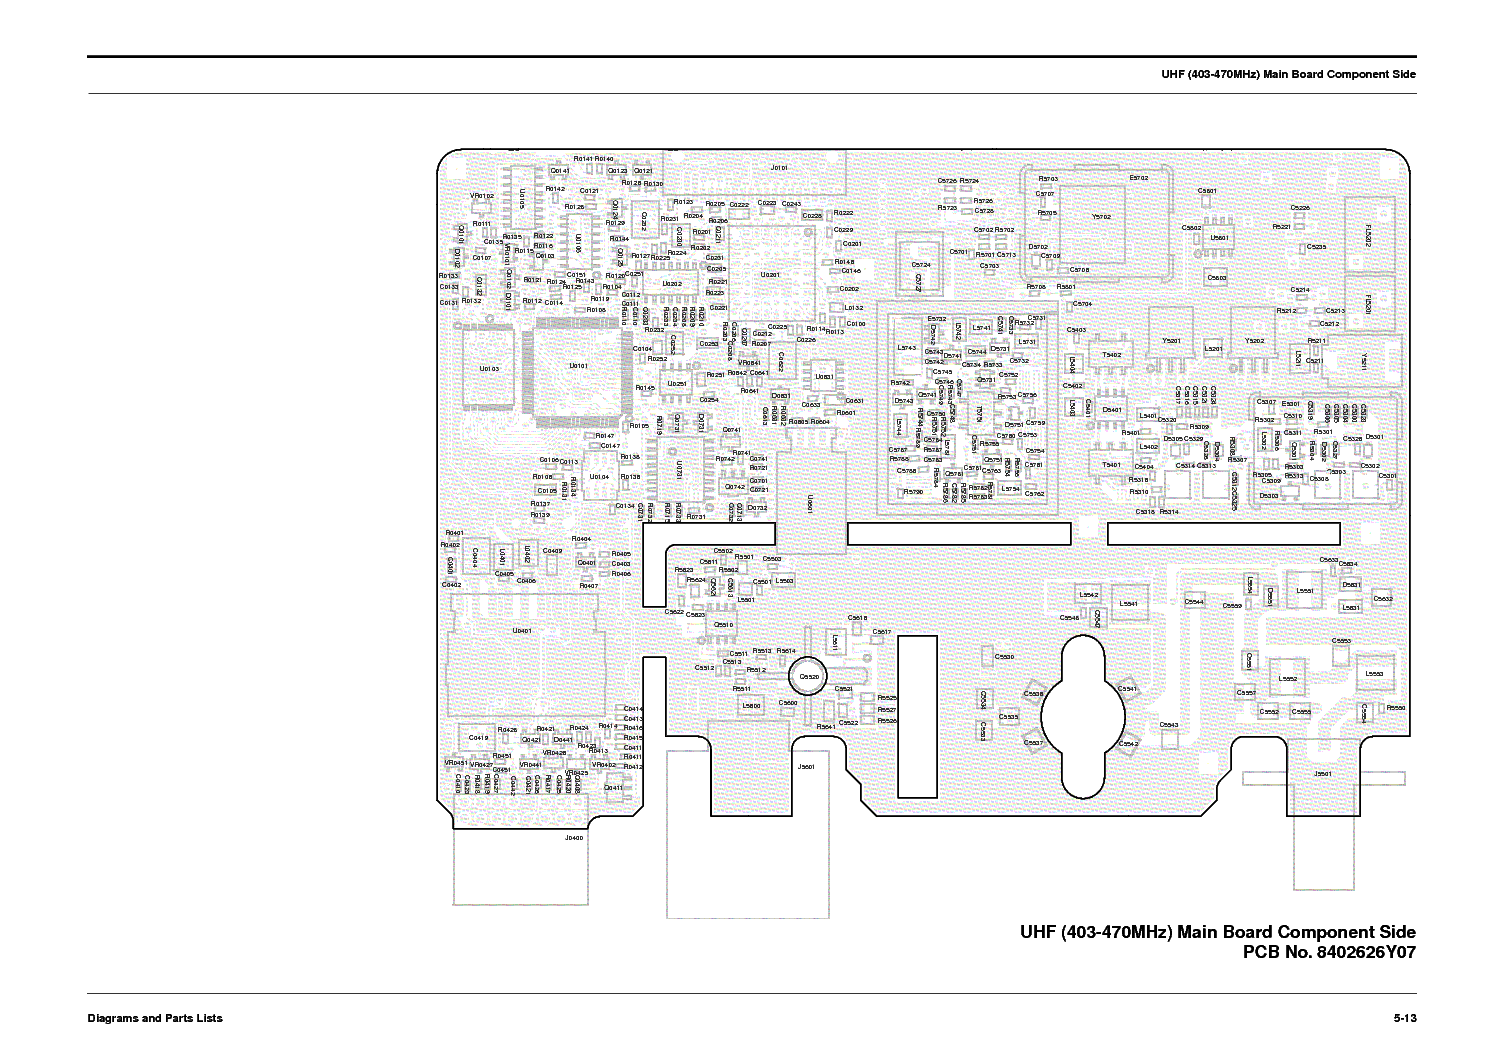 motorola pm1500 wiring diagram